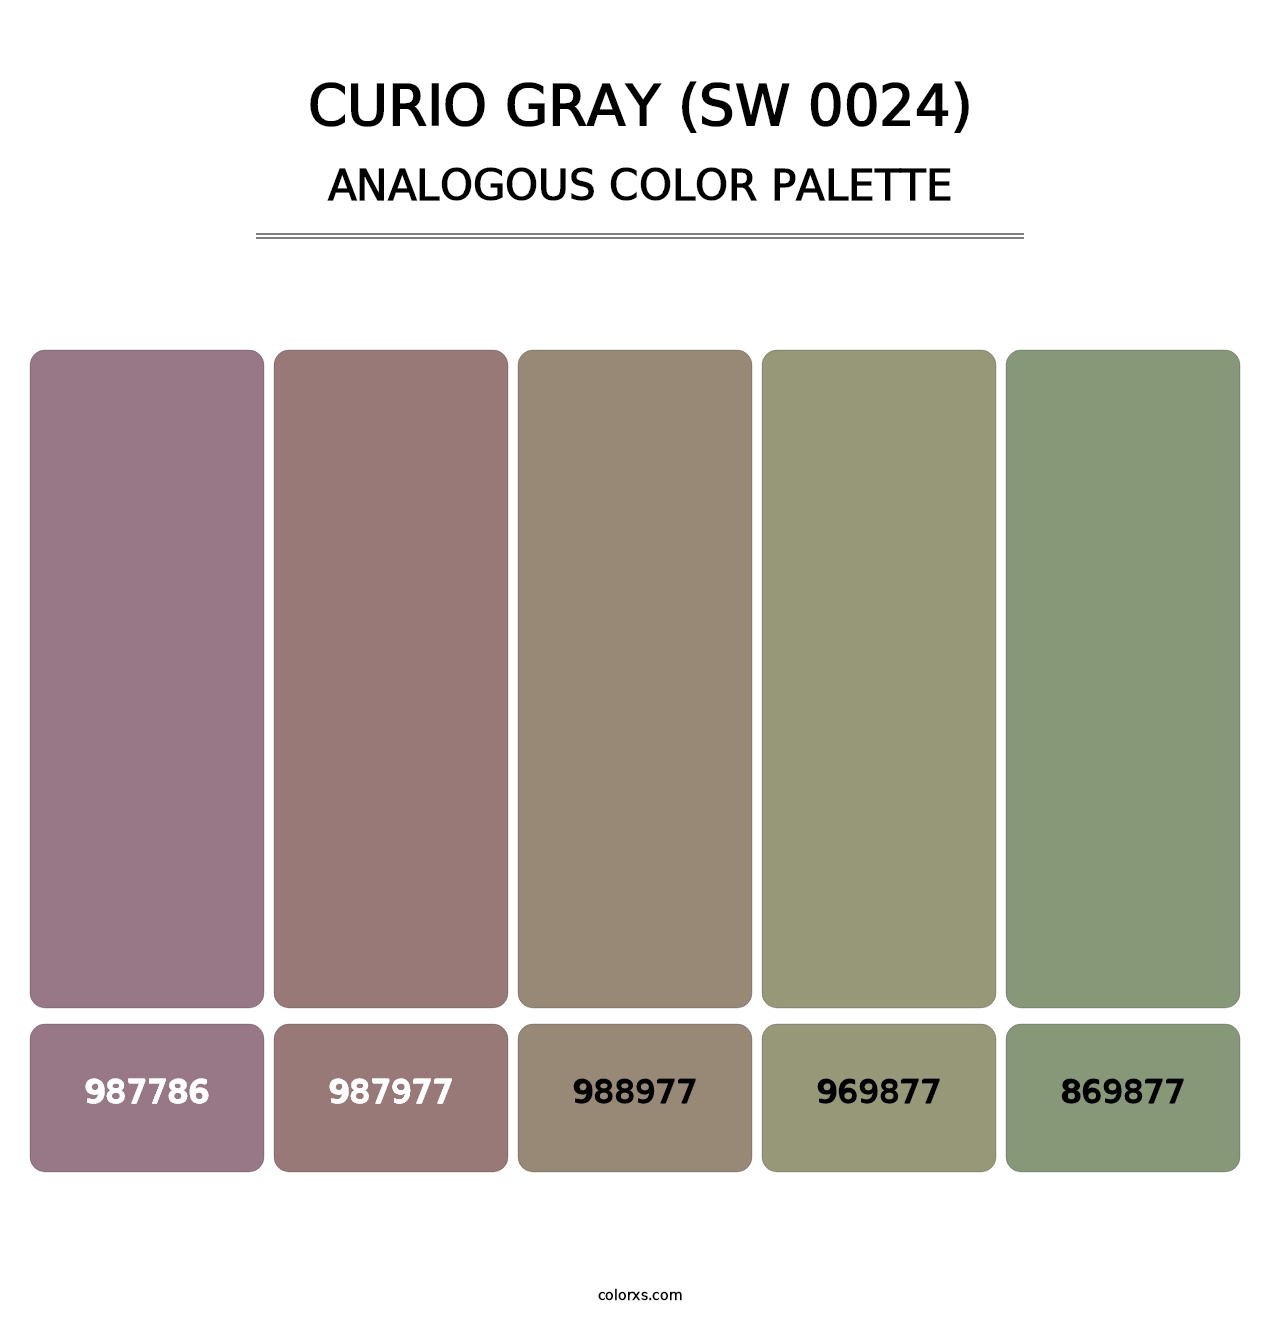 Curio Gray (SW 0024) - Analogous Color Palette